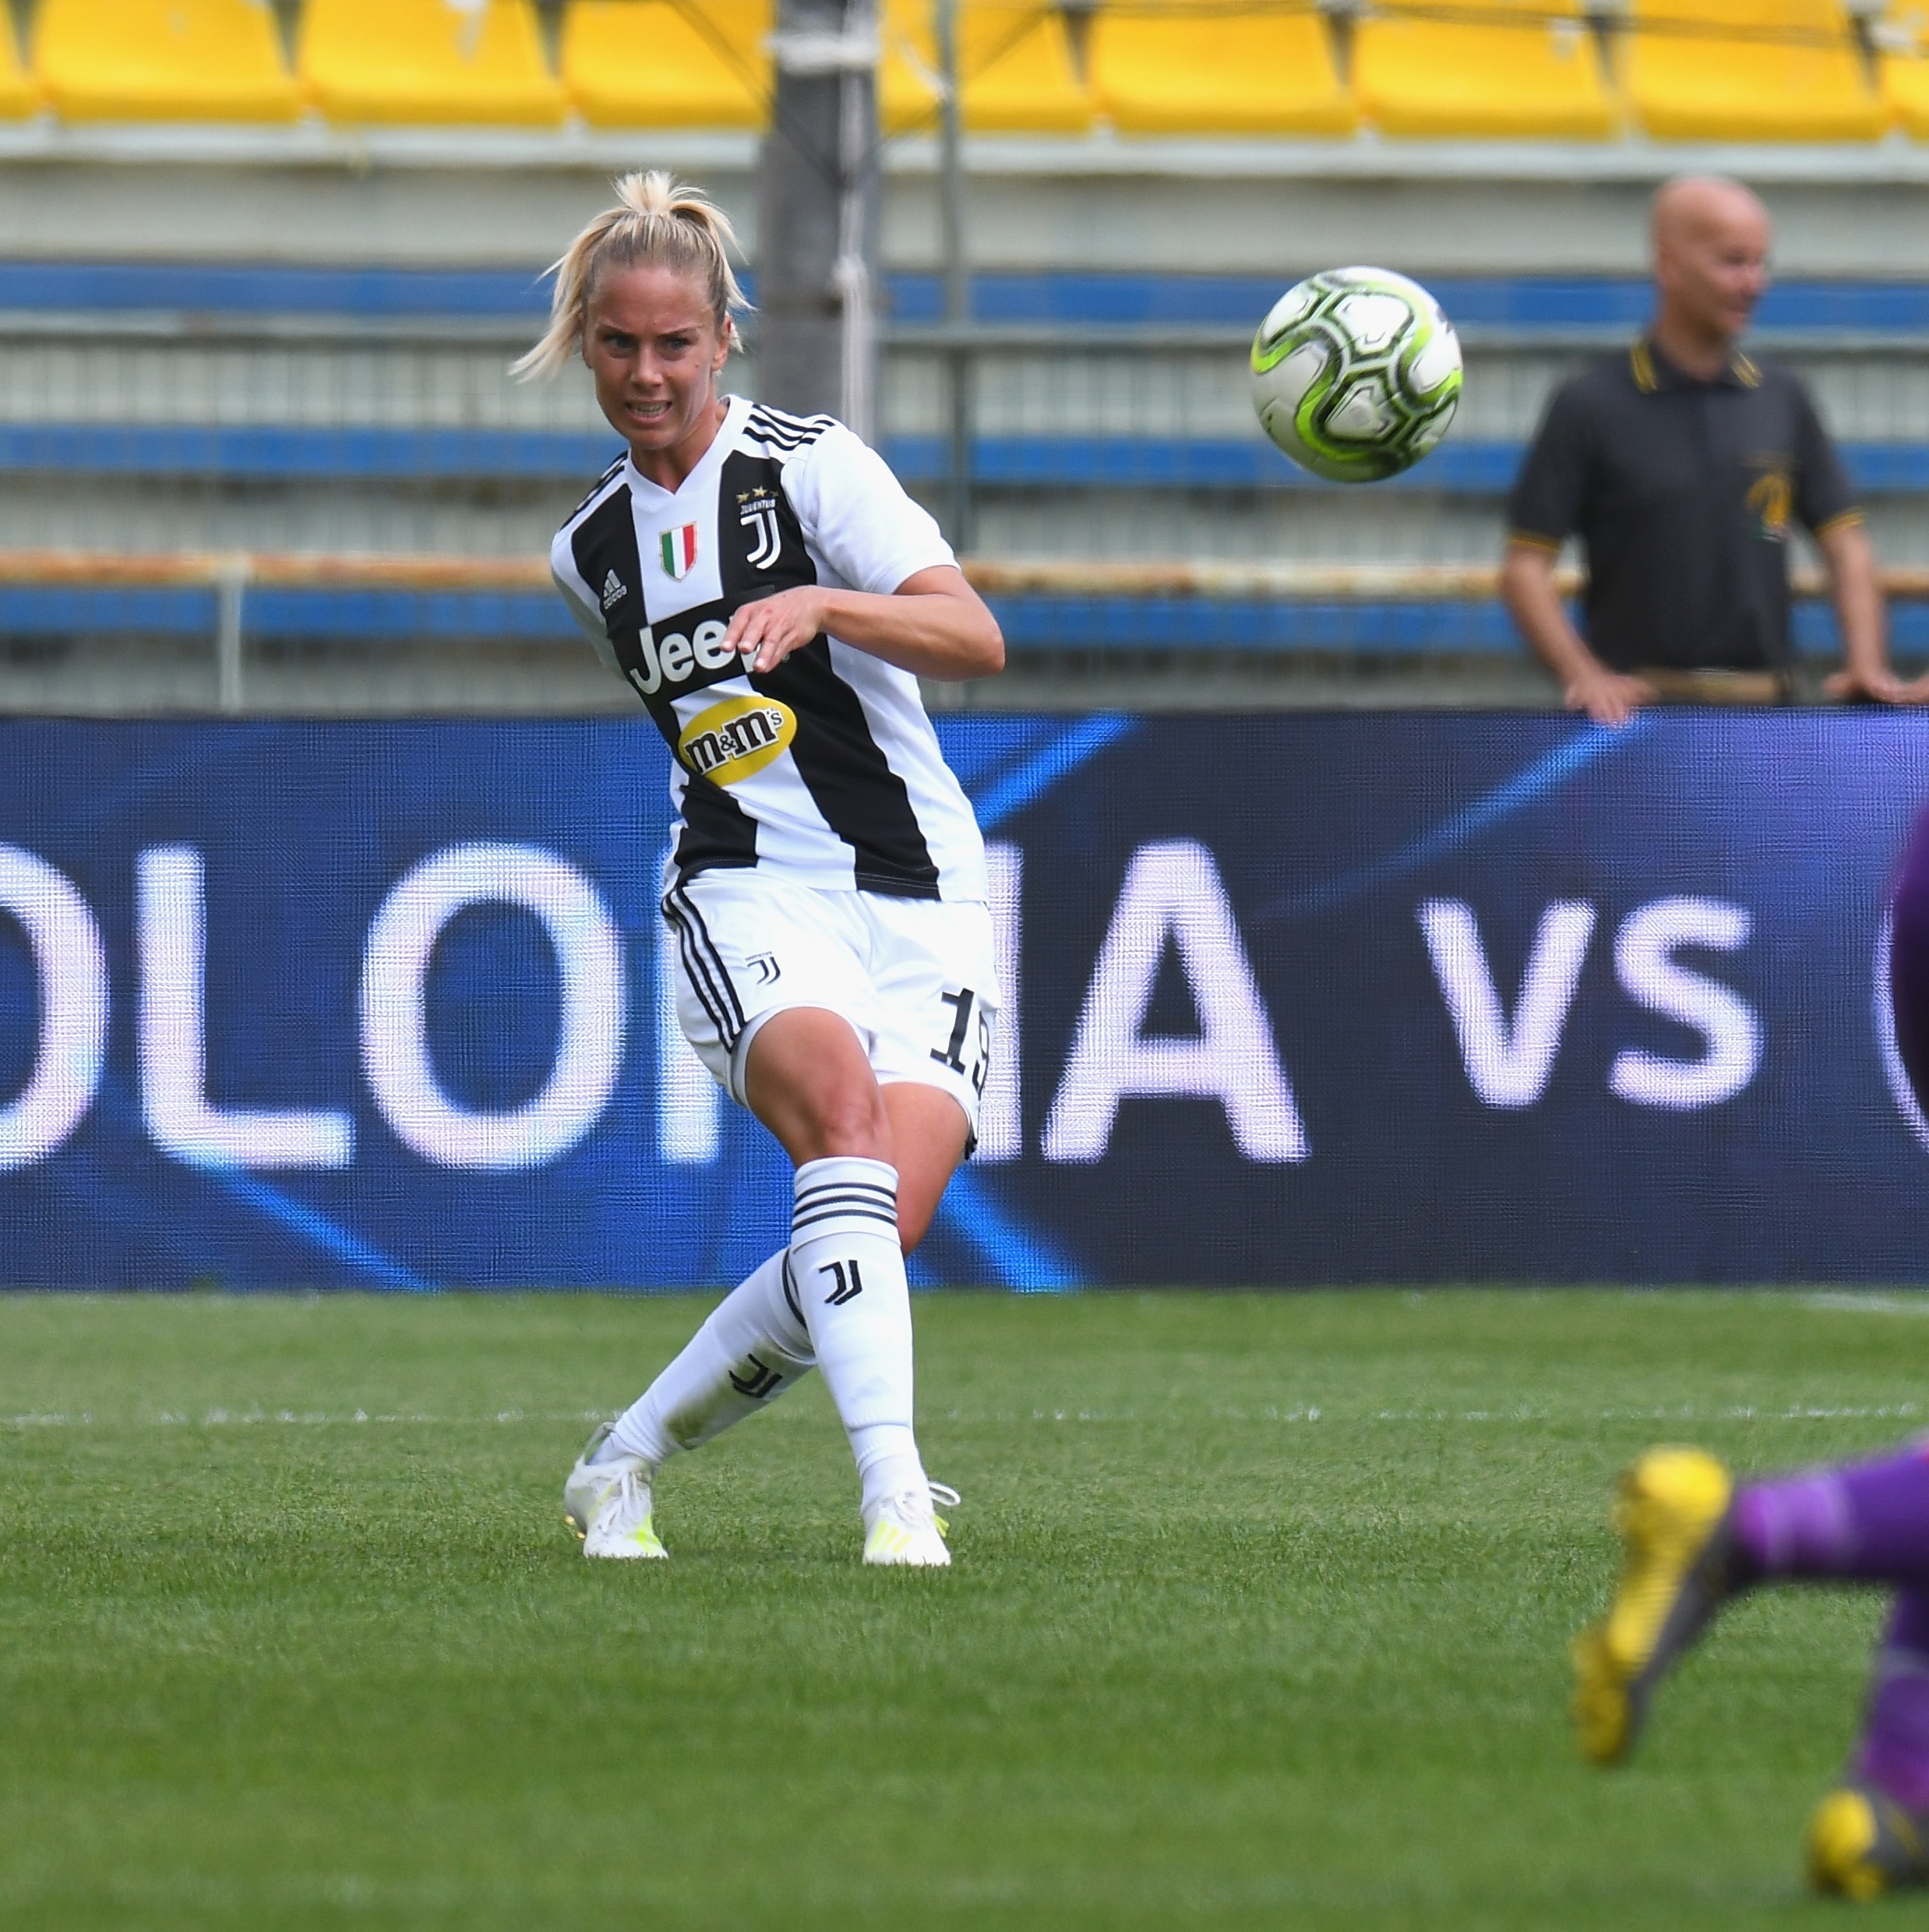 Confira as fotos oficias da equipe feminina da Juventus - Gazeta Esportiva